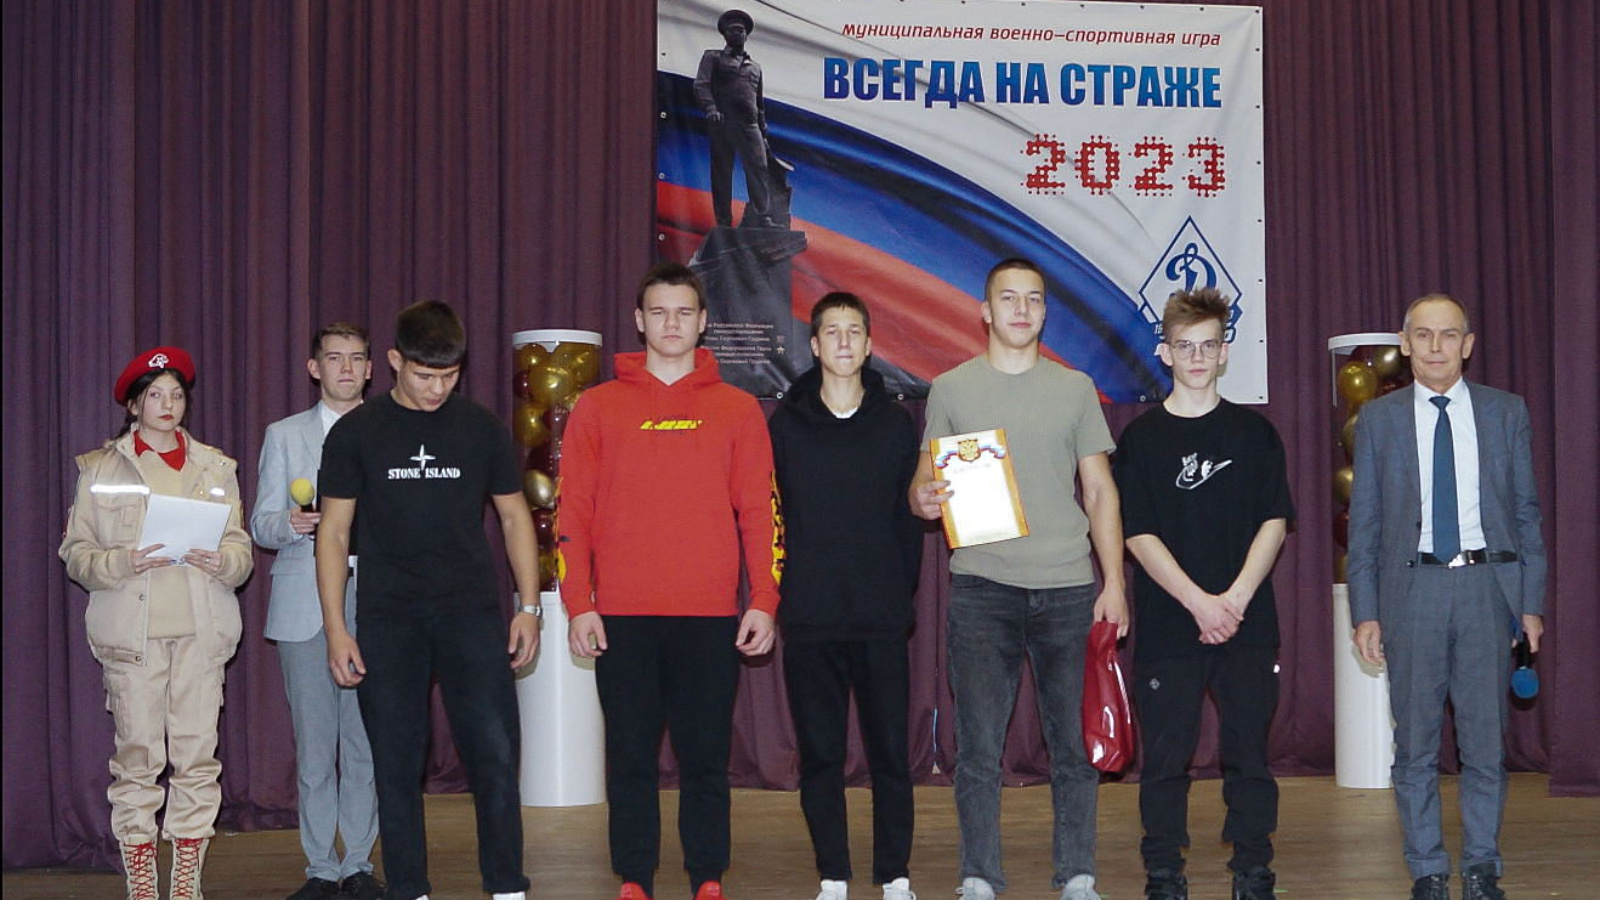 Ветеран-росгвардеец принял участие в открытии военно-спортивной игры среди школьников в Татарстане